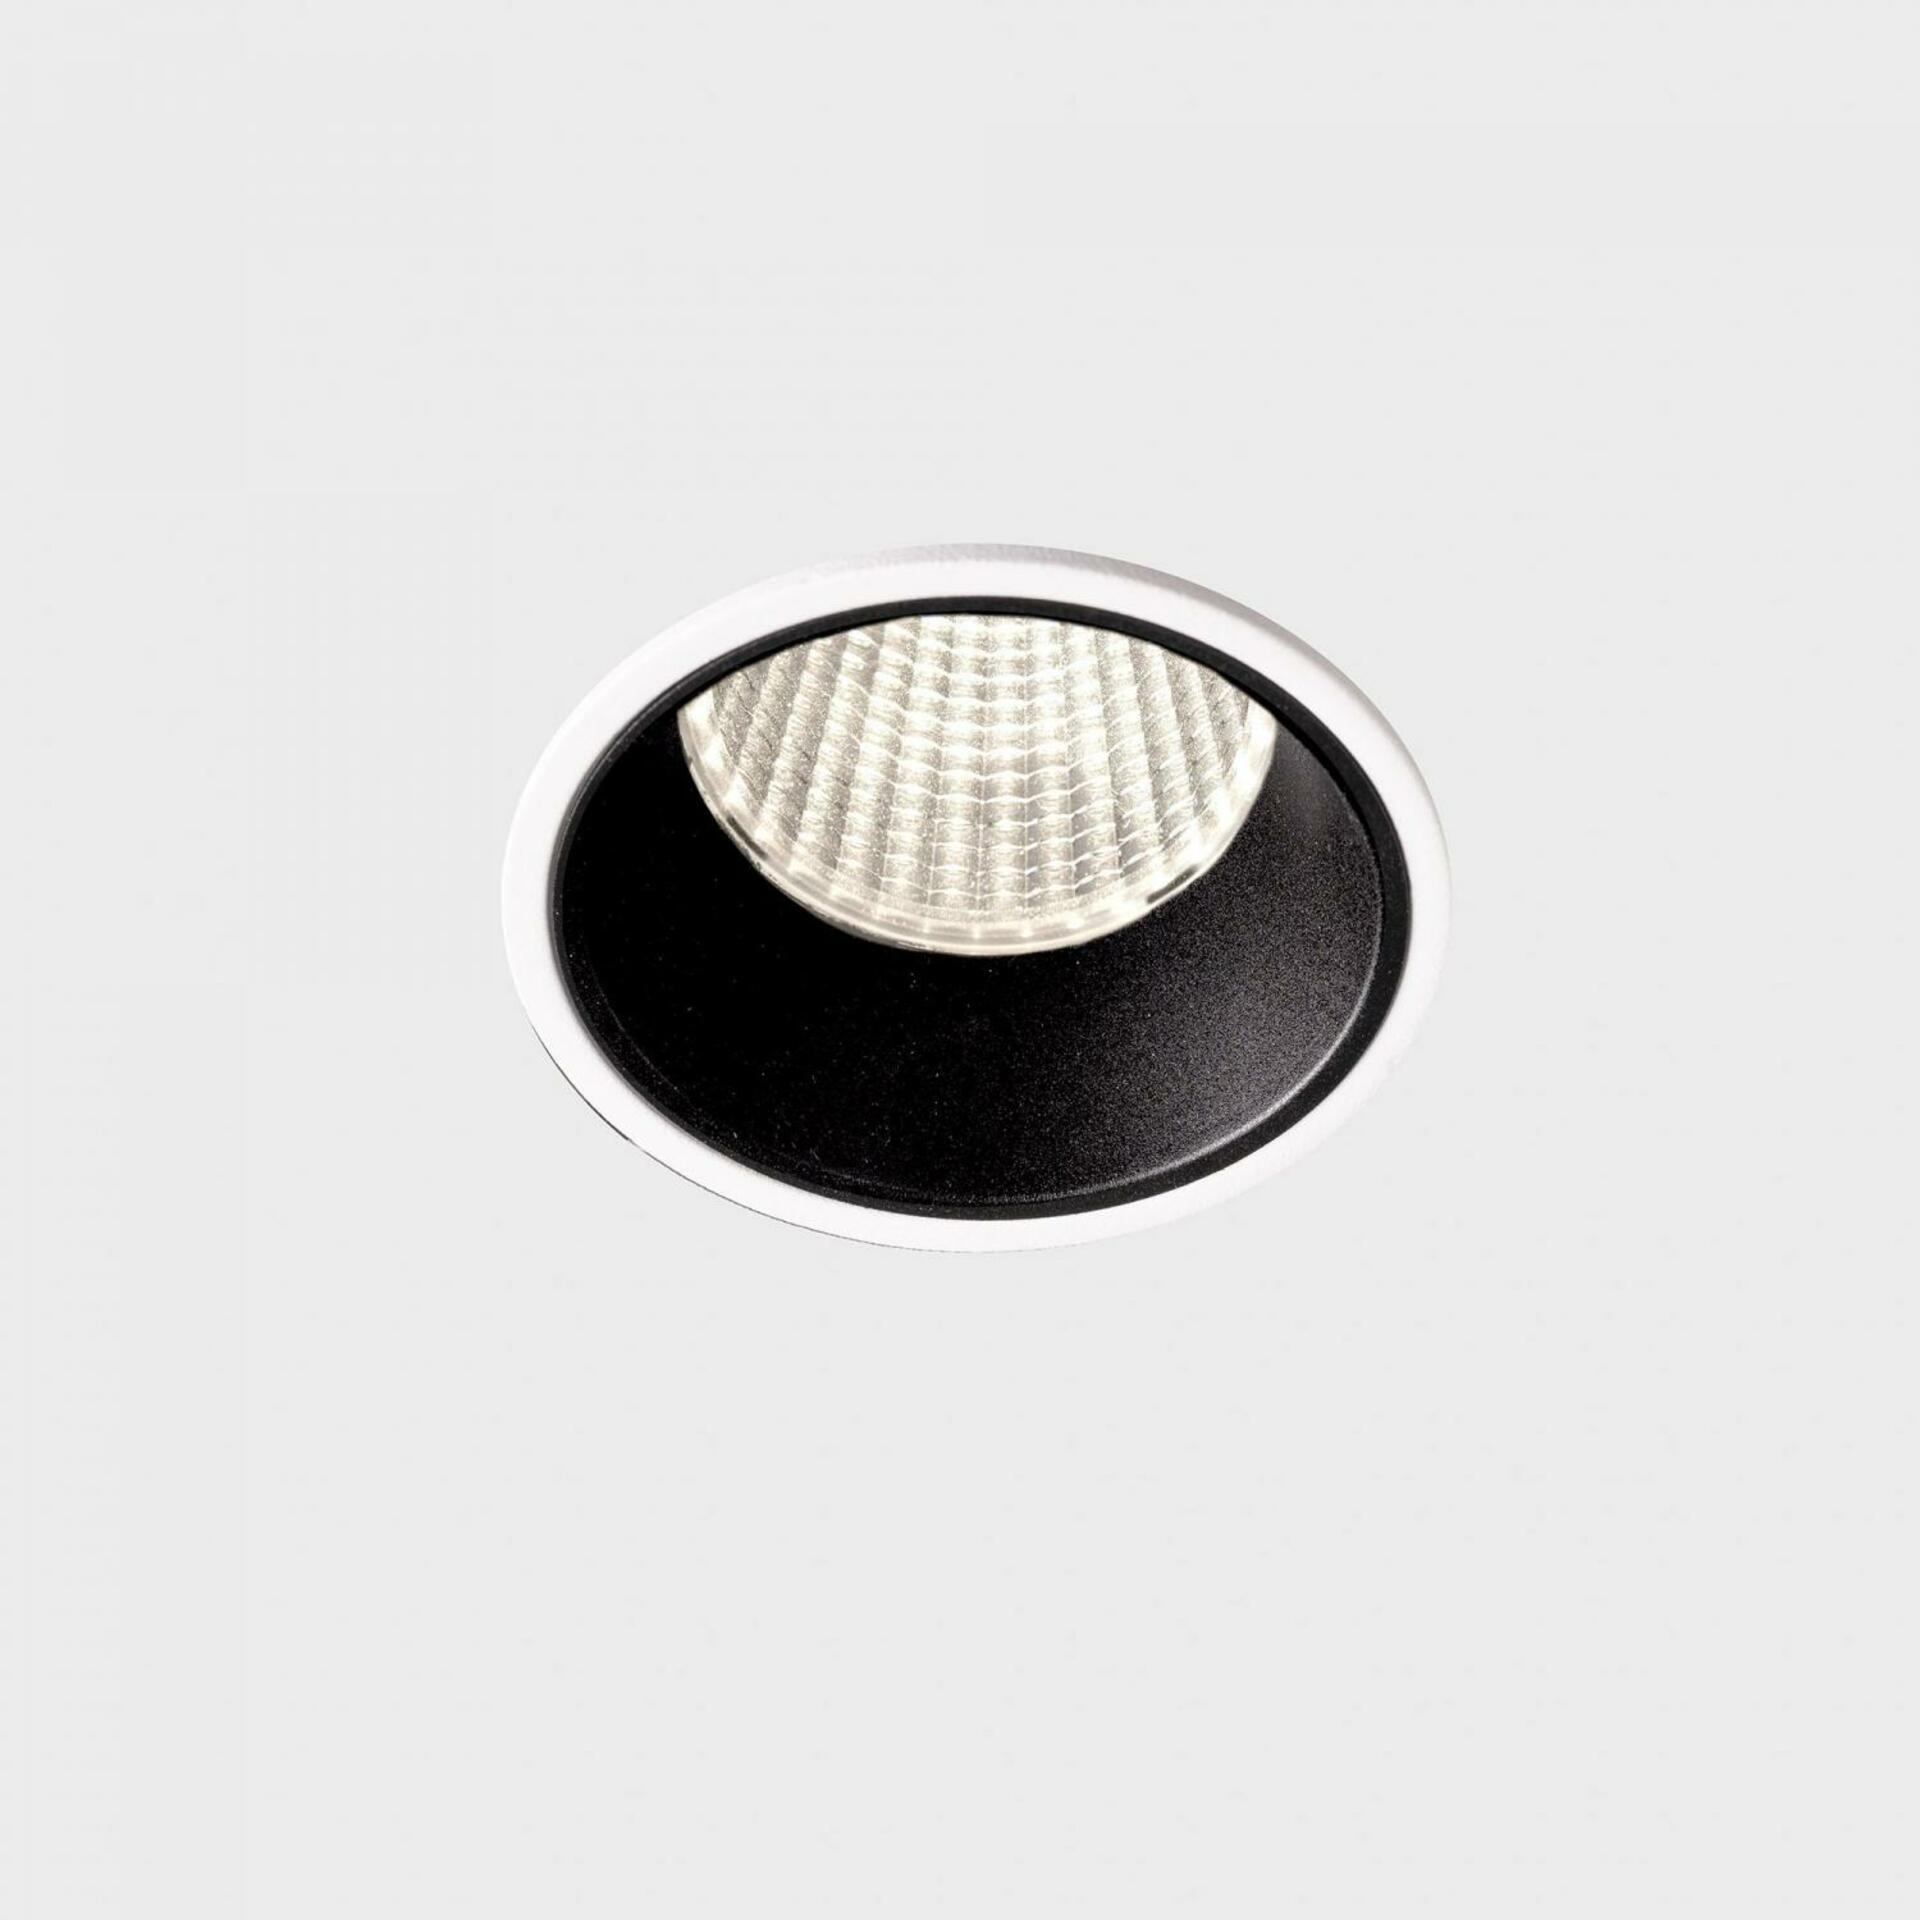 KOHL LIGHTING KOHL-Lighting VERSUS zapuštěné svítidlo s rámečkem pr. 60 mm bílá-černá 38° 5 W CRI 80 3000K PUSH